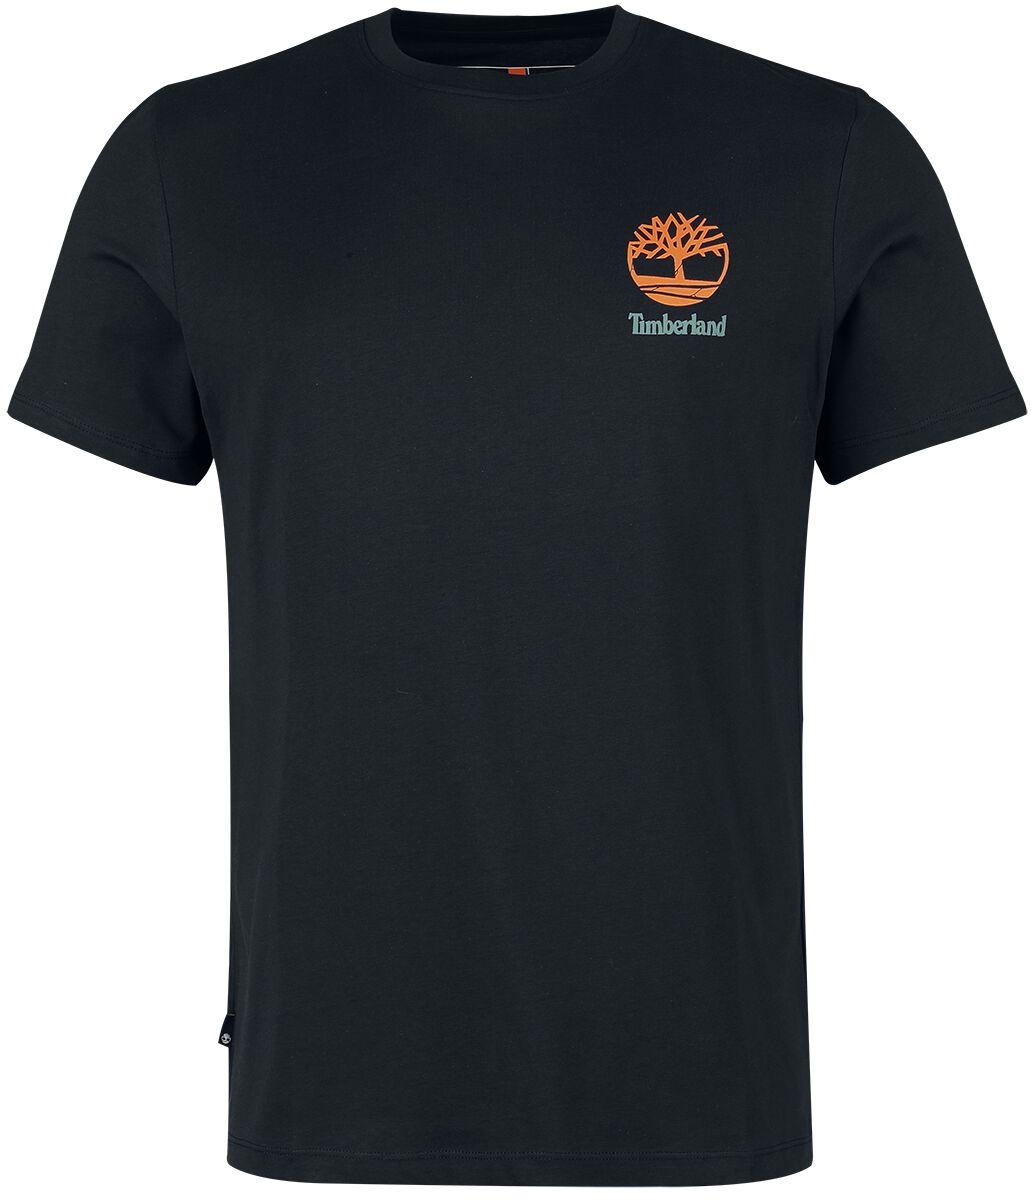 Timberland T-Shirt - Back Graphic Short Sleeve Tee - S bis XXL - für Männer - Größe XL - schwarz